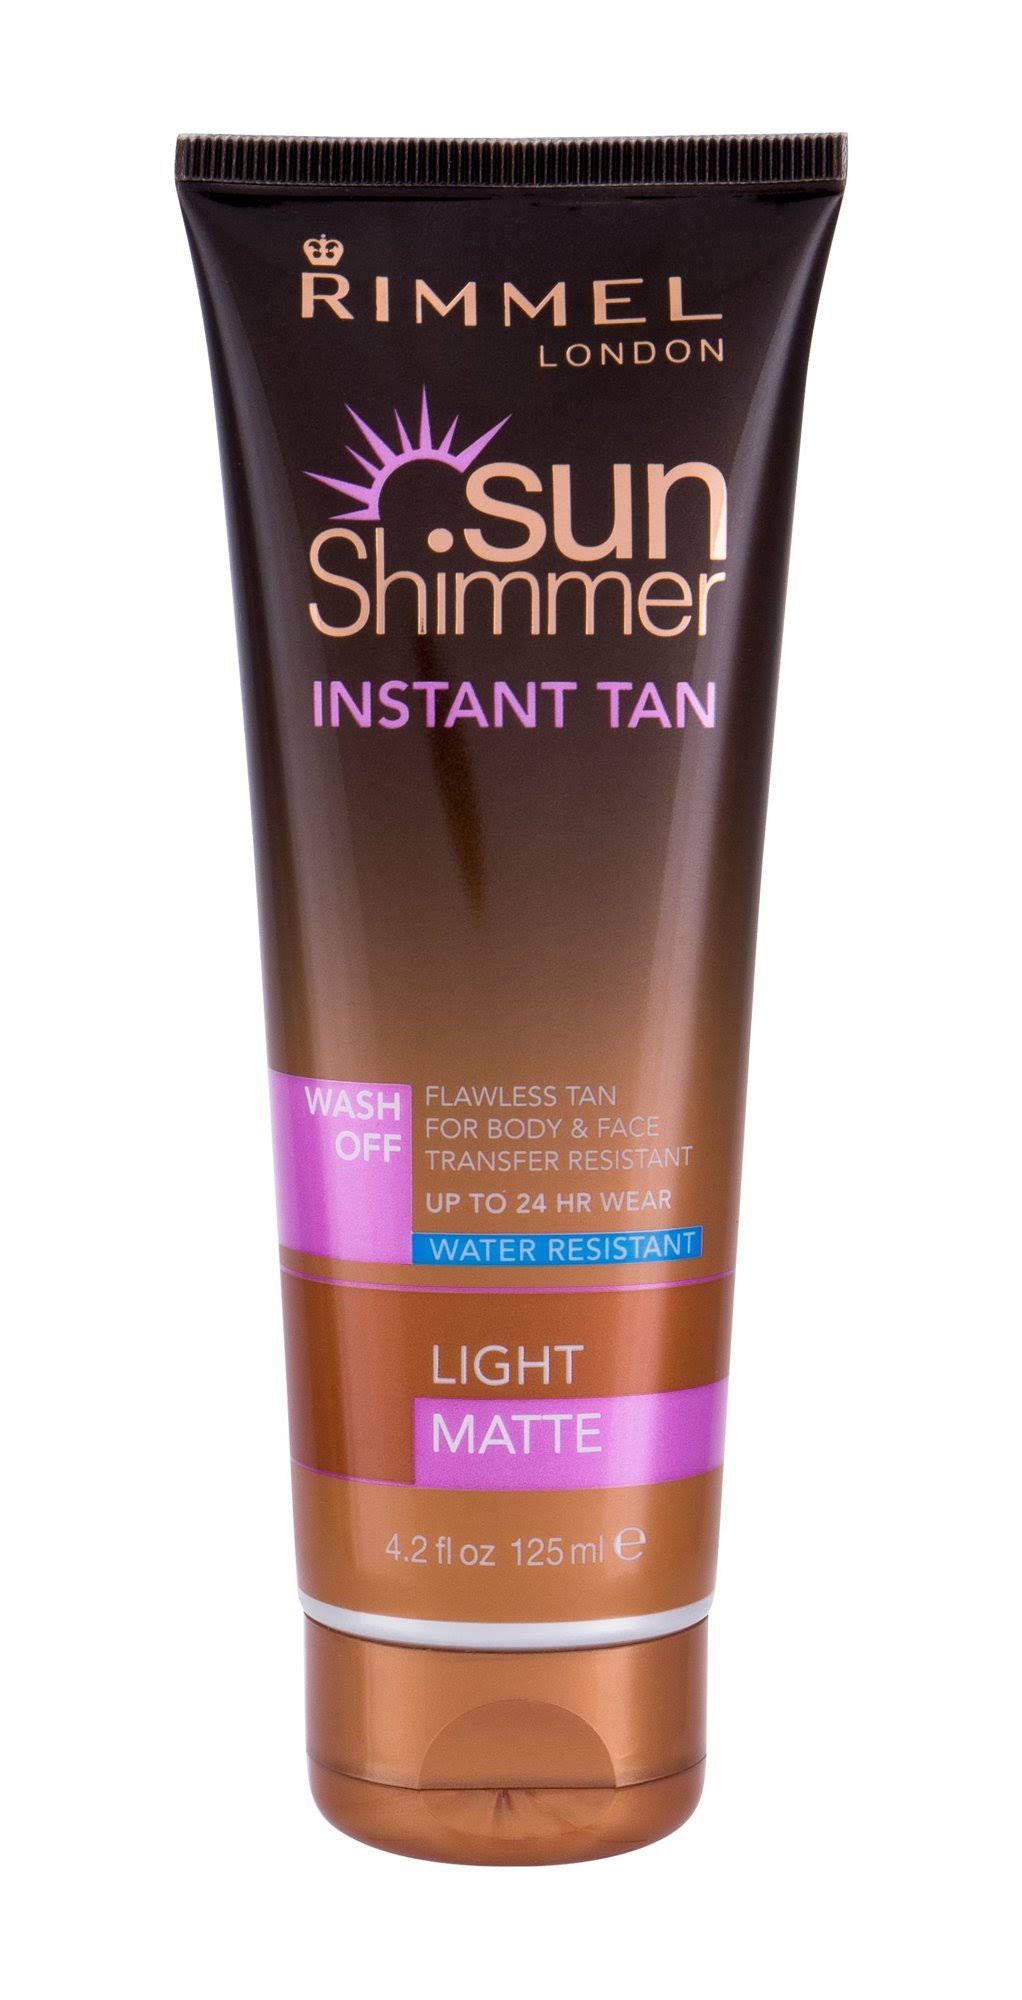 Rimmel London Sunshimmer Instant Tan Cream - Light Matte, 125ml